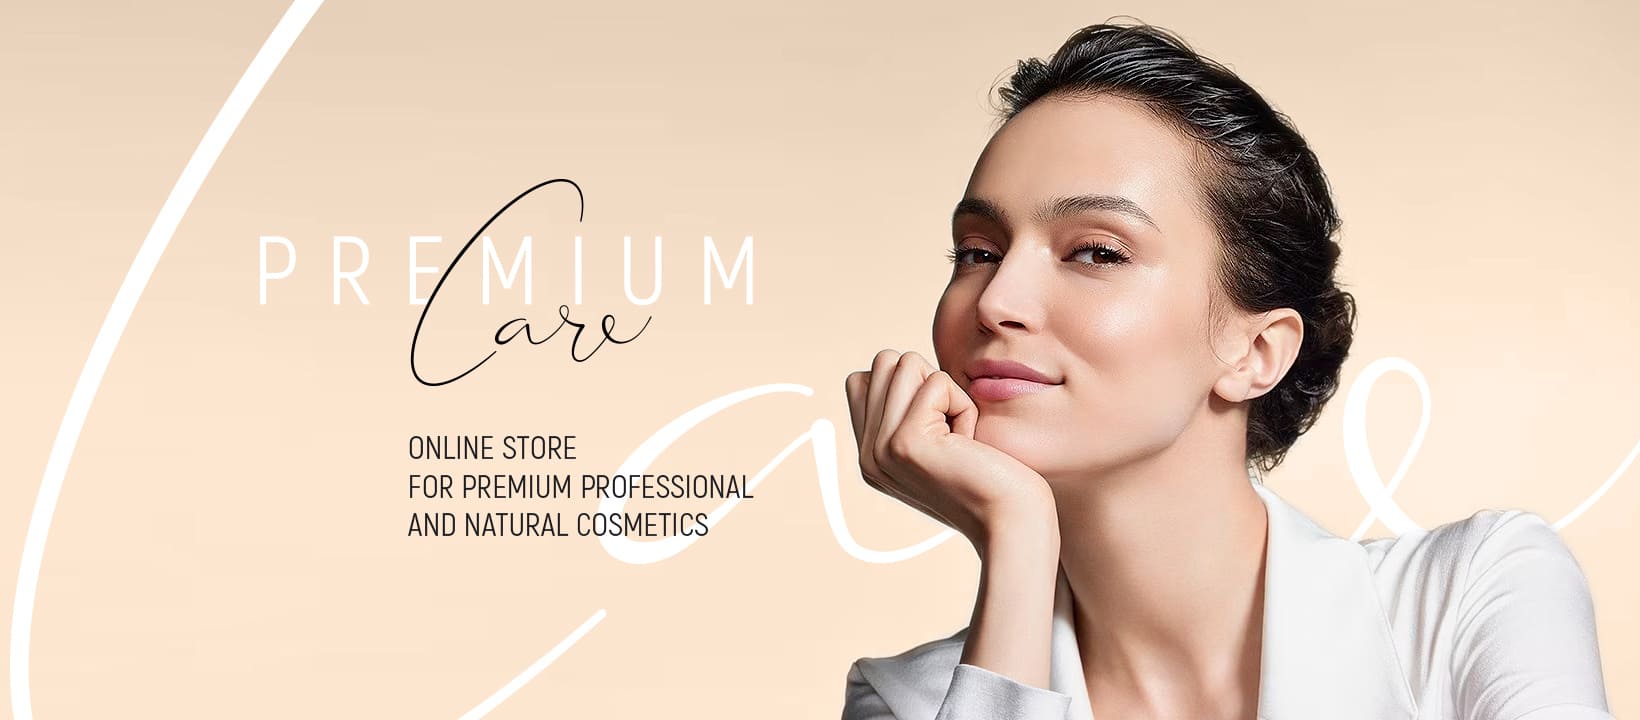 PremiumCare.Shop - натуральная и органическая beauty-продукция